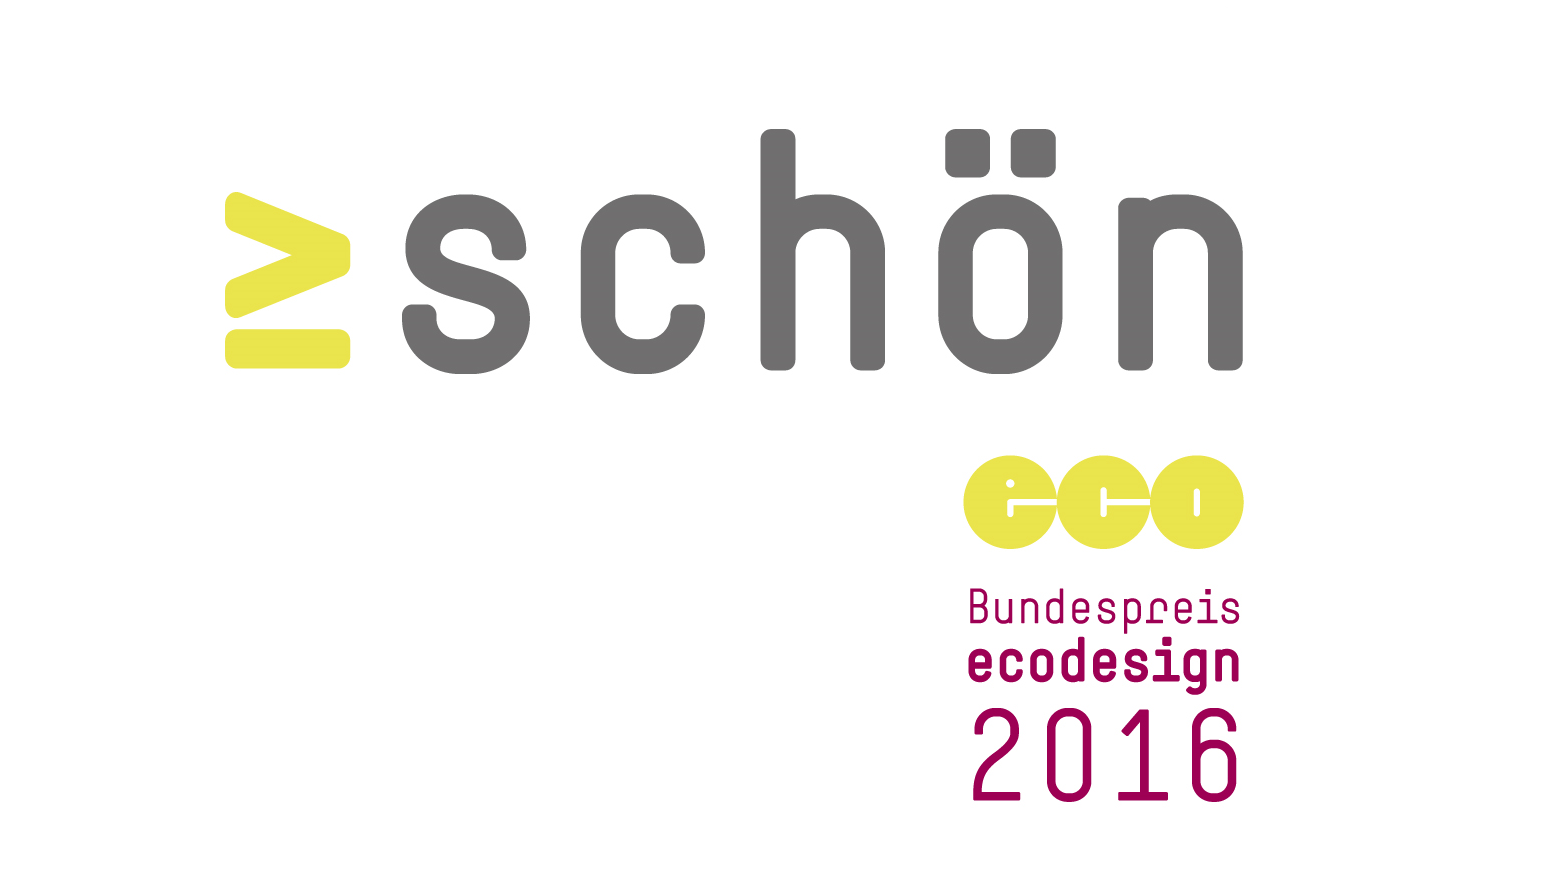 Das Wort "schön" als Logo des diesjährigen Bundespreis Ecodesign.